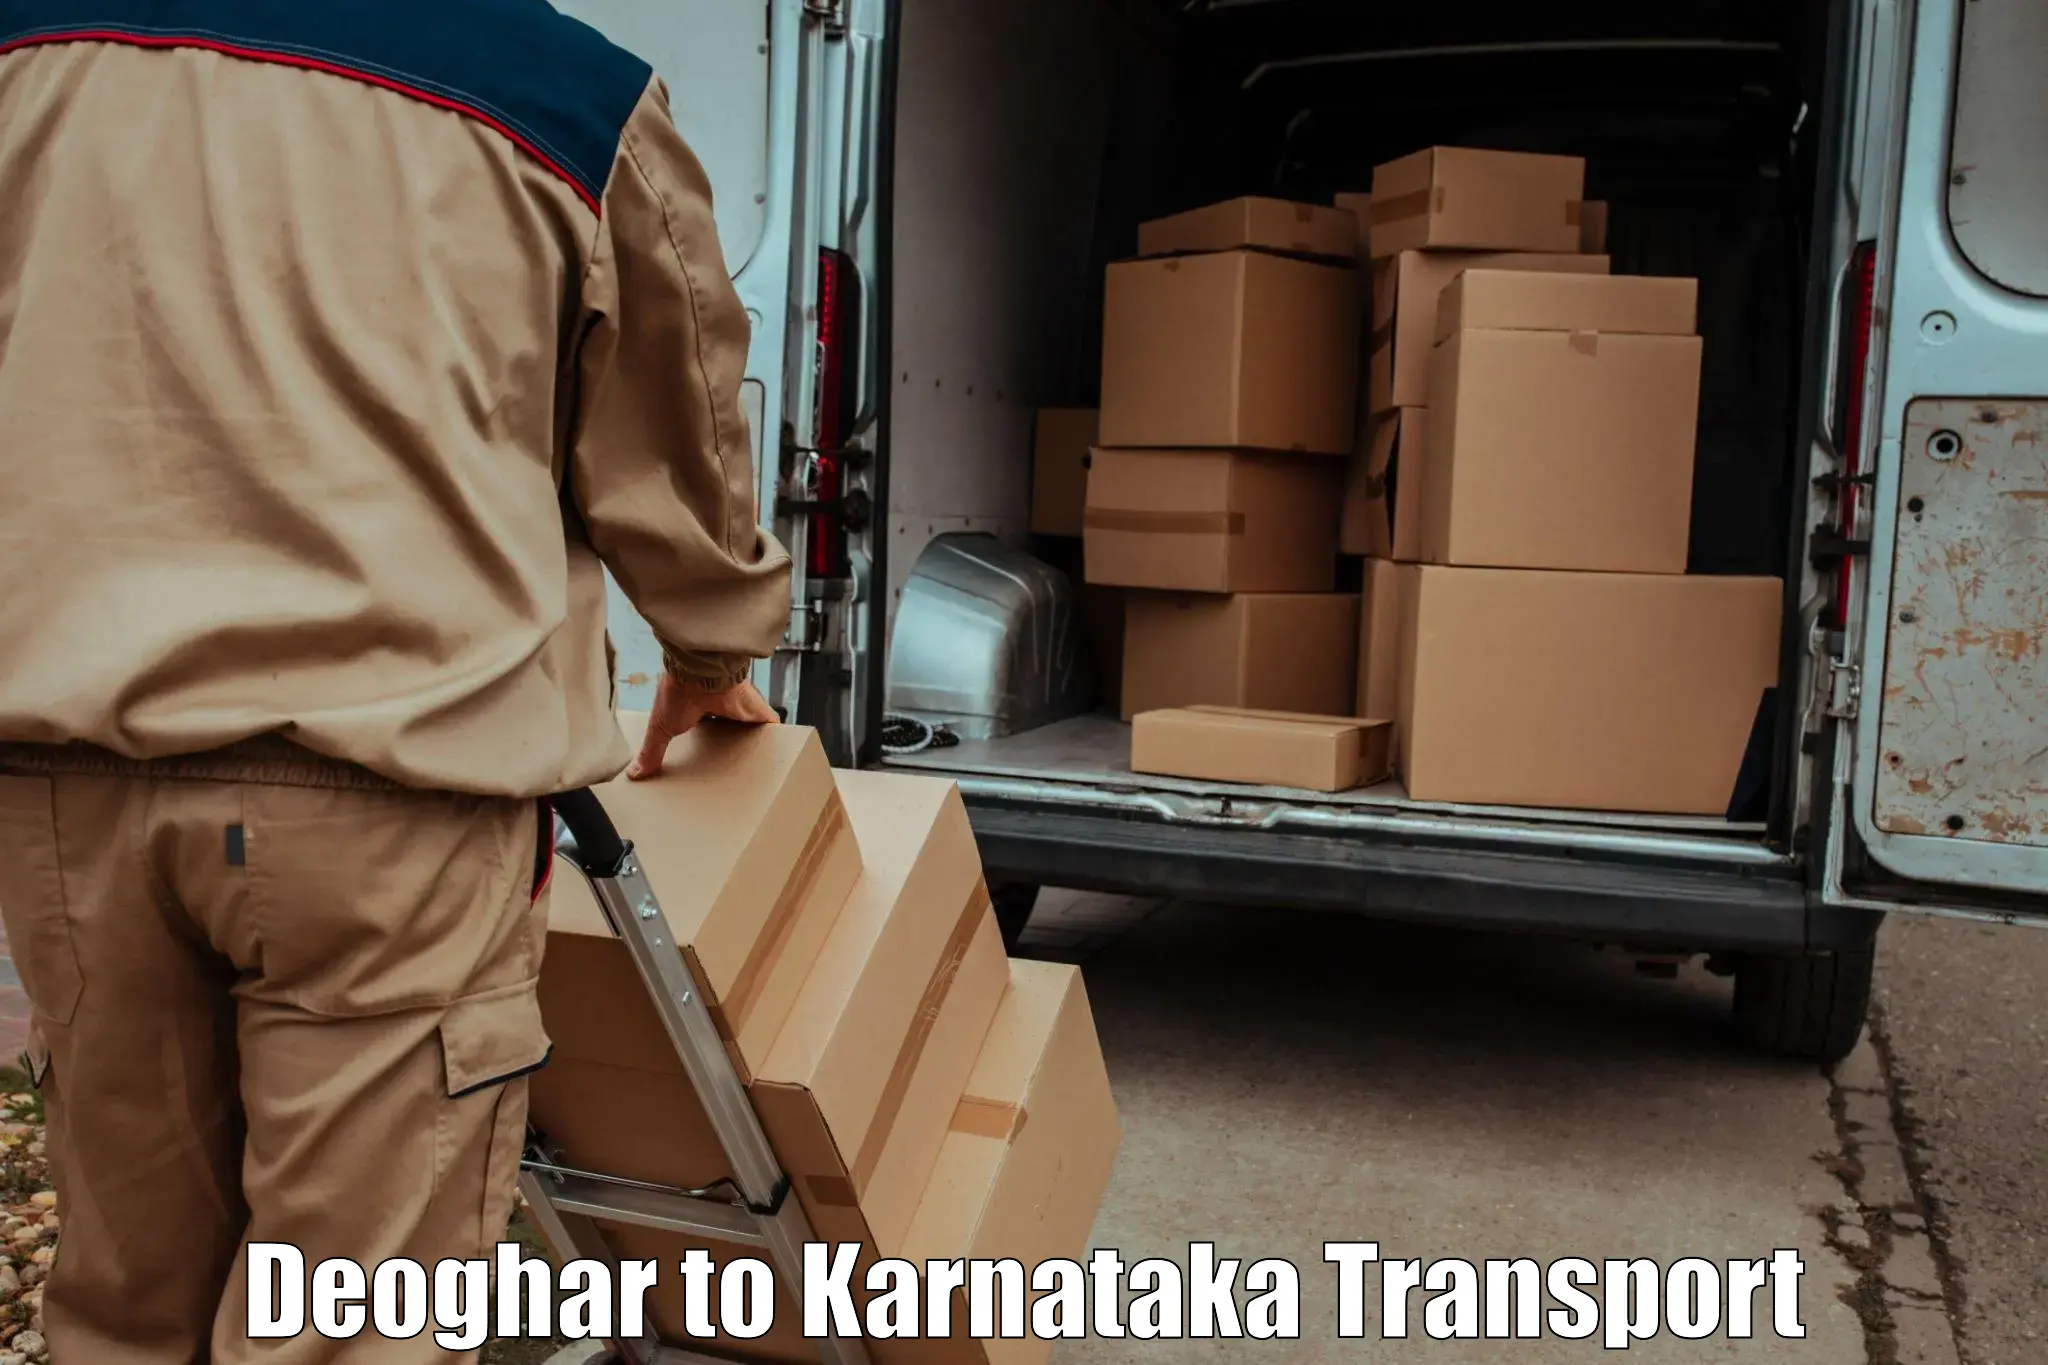 Online transport Deoghar to Kanjarakatte